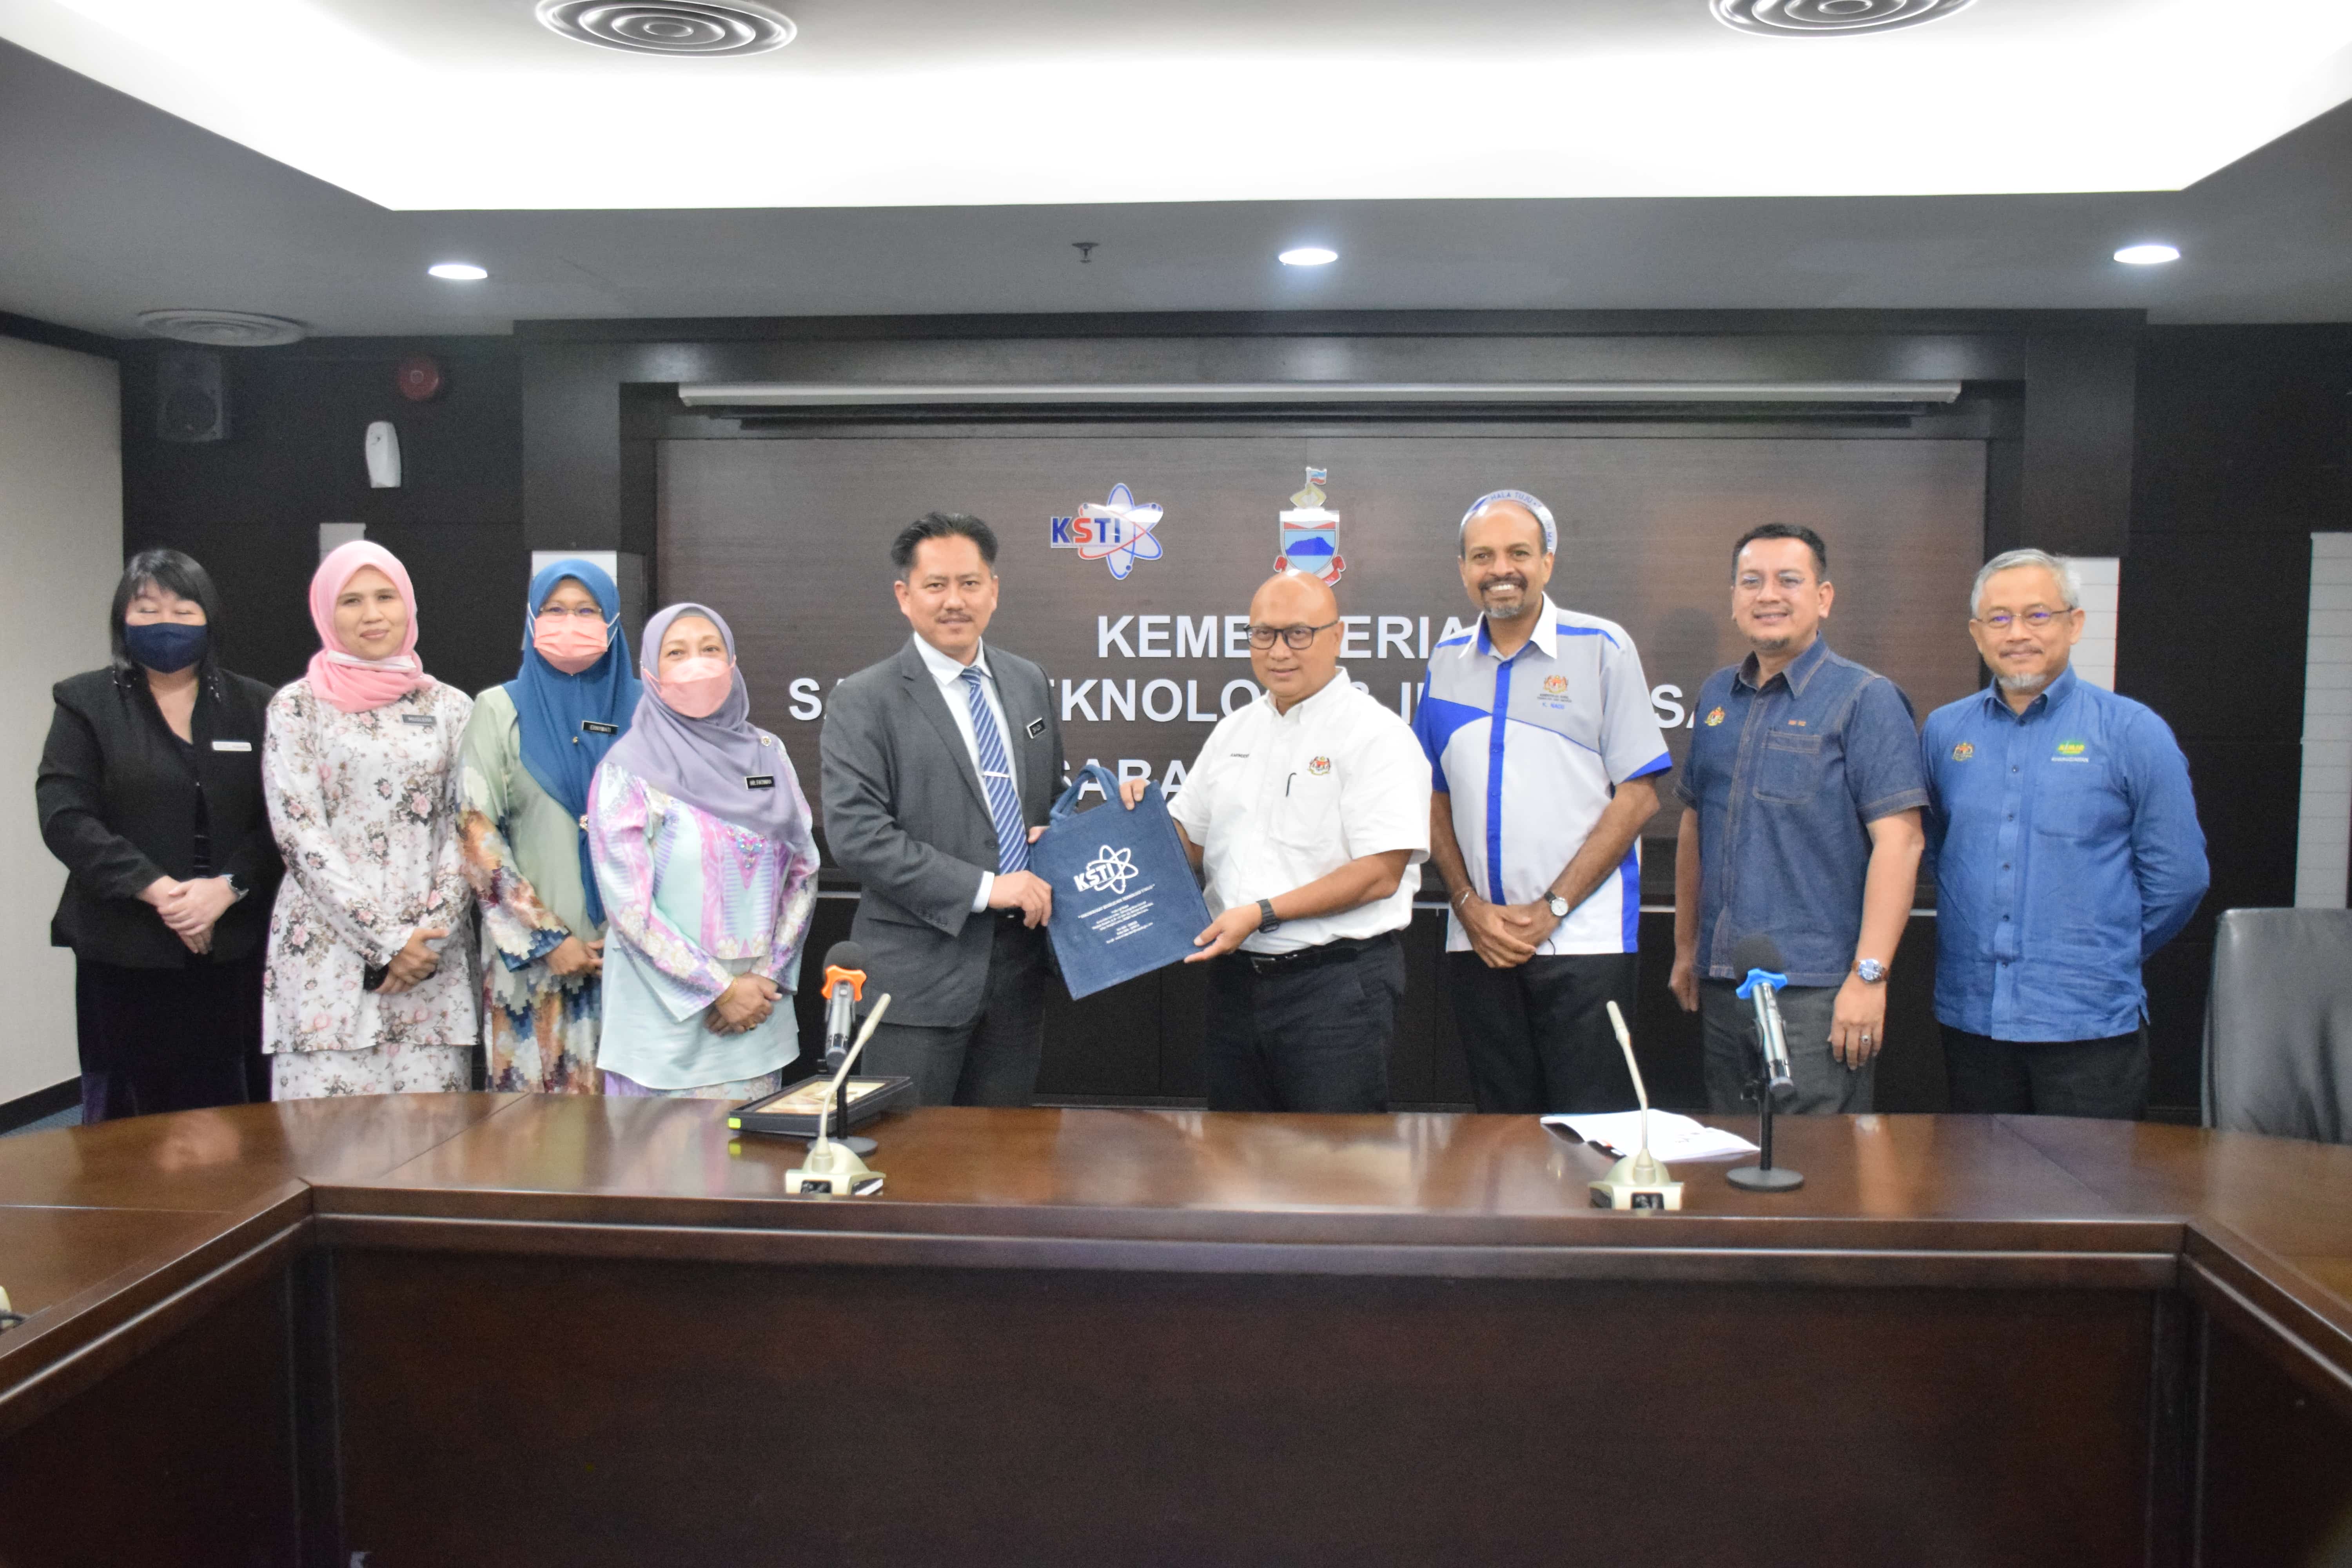 Kunjungan hormat YBhg. Datuk Ts. Dr. Aminuddin bin Hassim Ketua Setiausaha Kementerian Sains, Teknologi dan Inovasi berserta rombongan ke KSTI